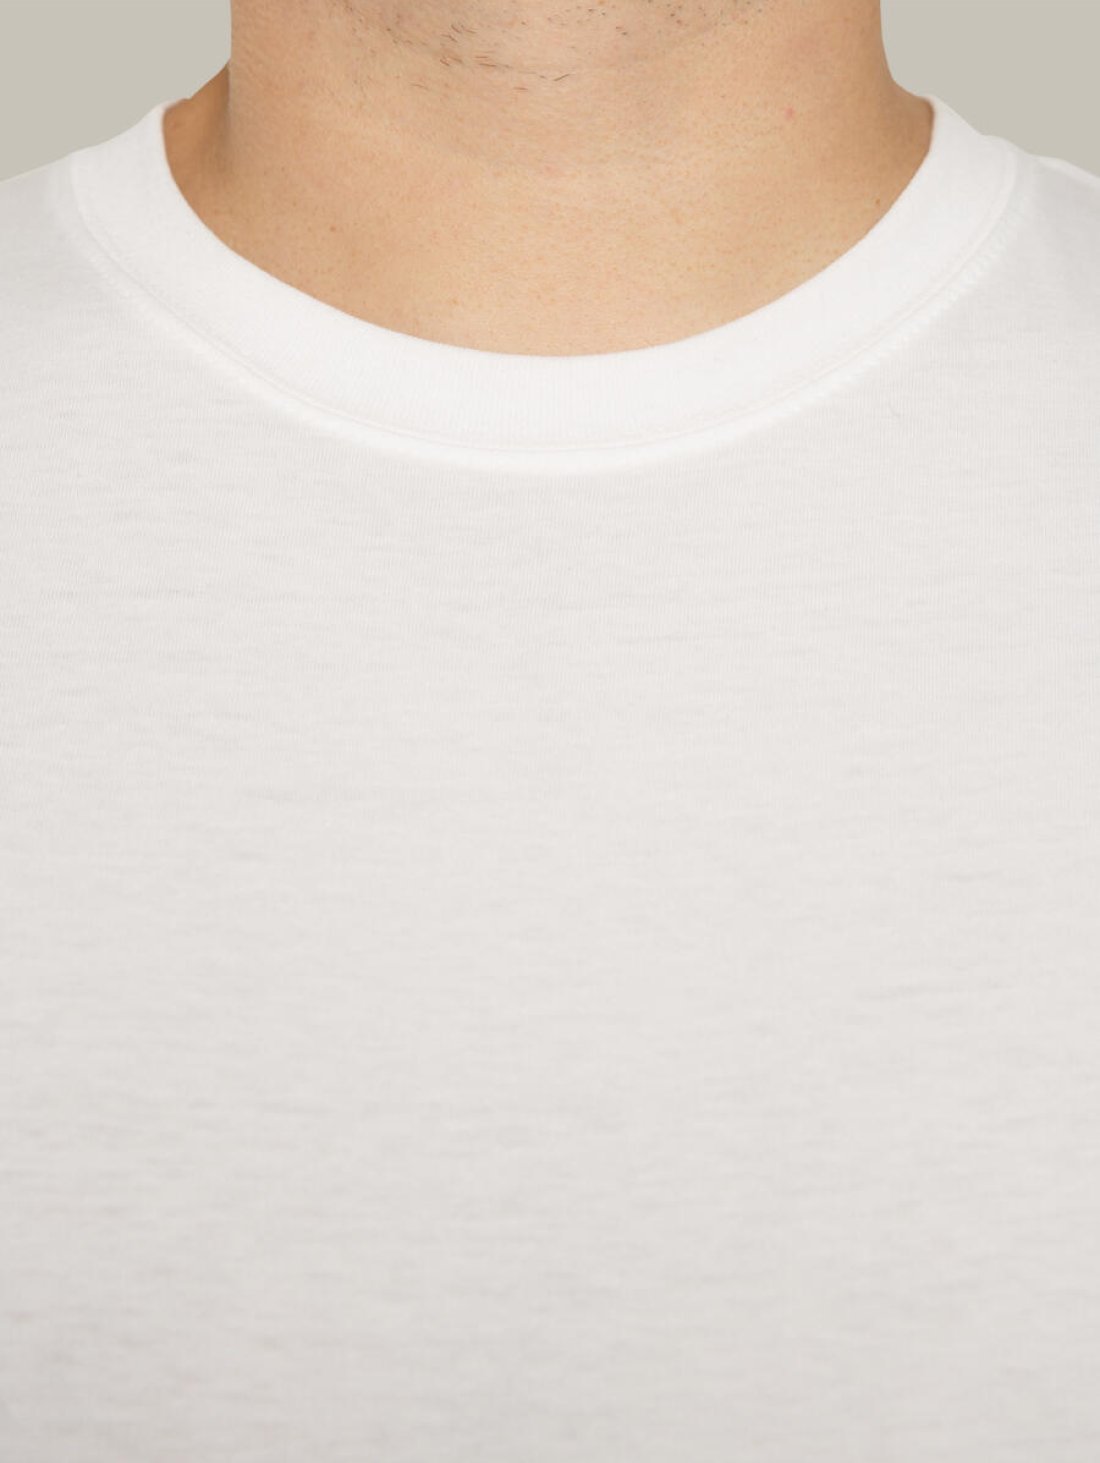 Чоловіча футболка, біла з принтом аватара Hopper 020